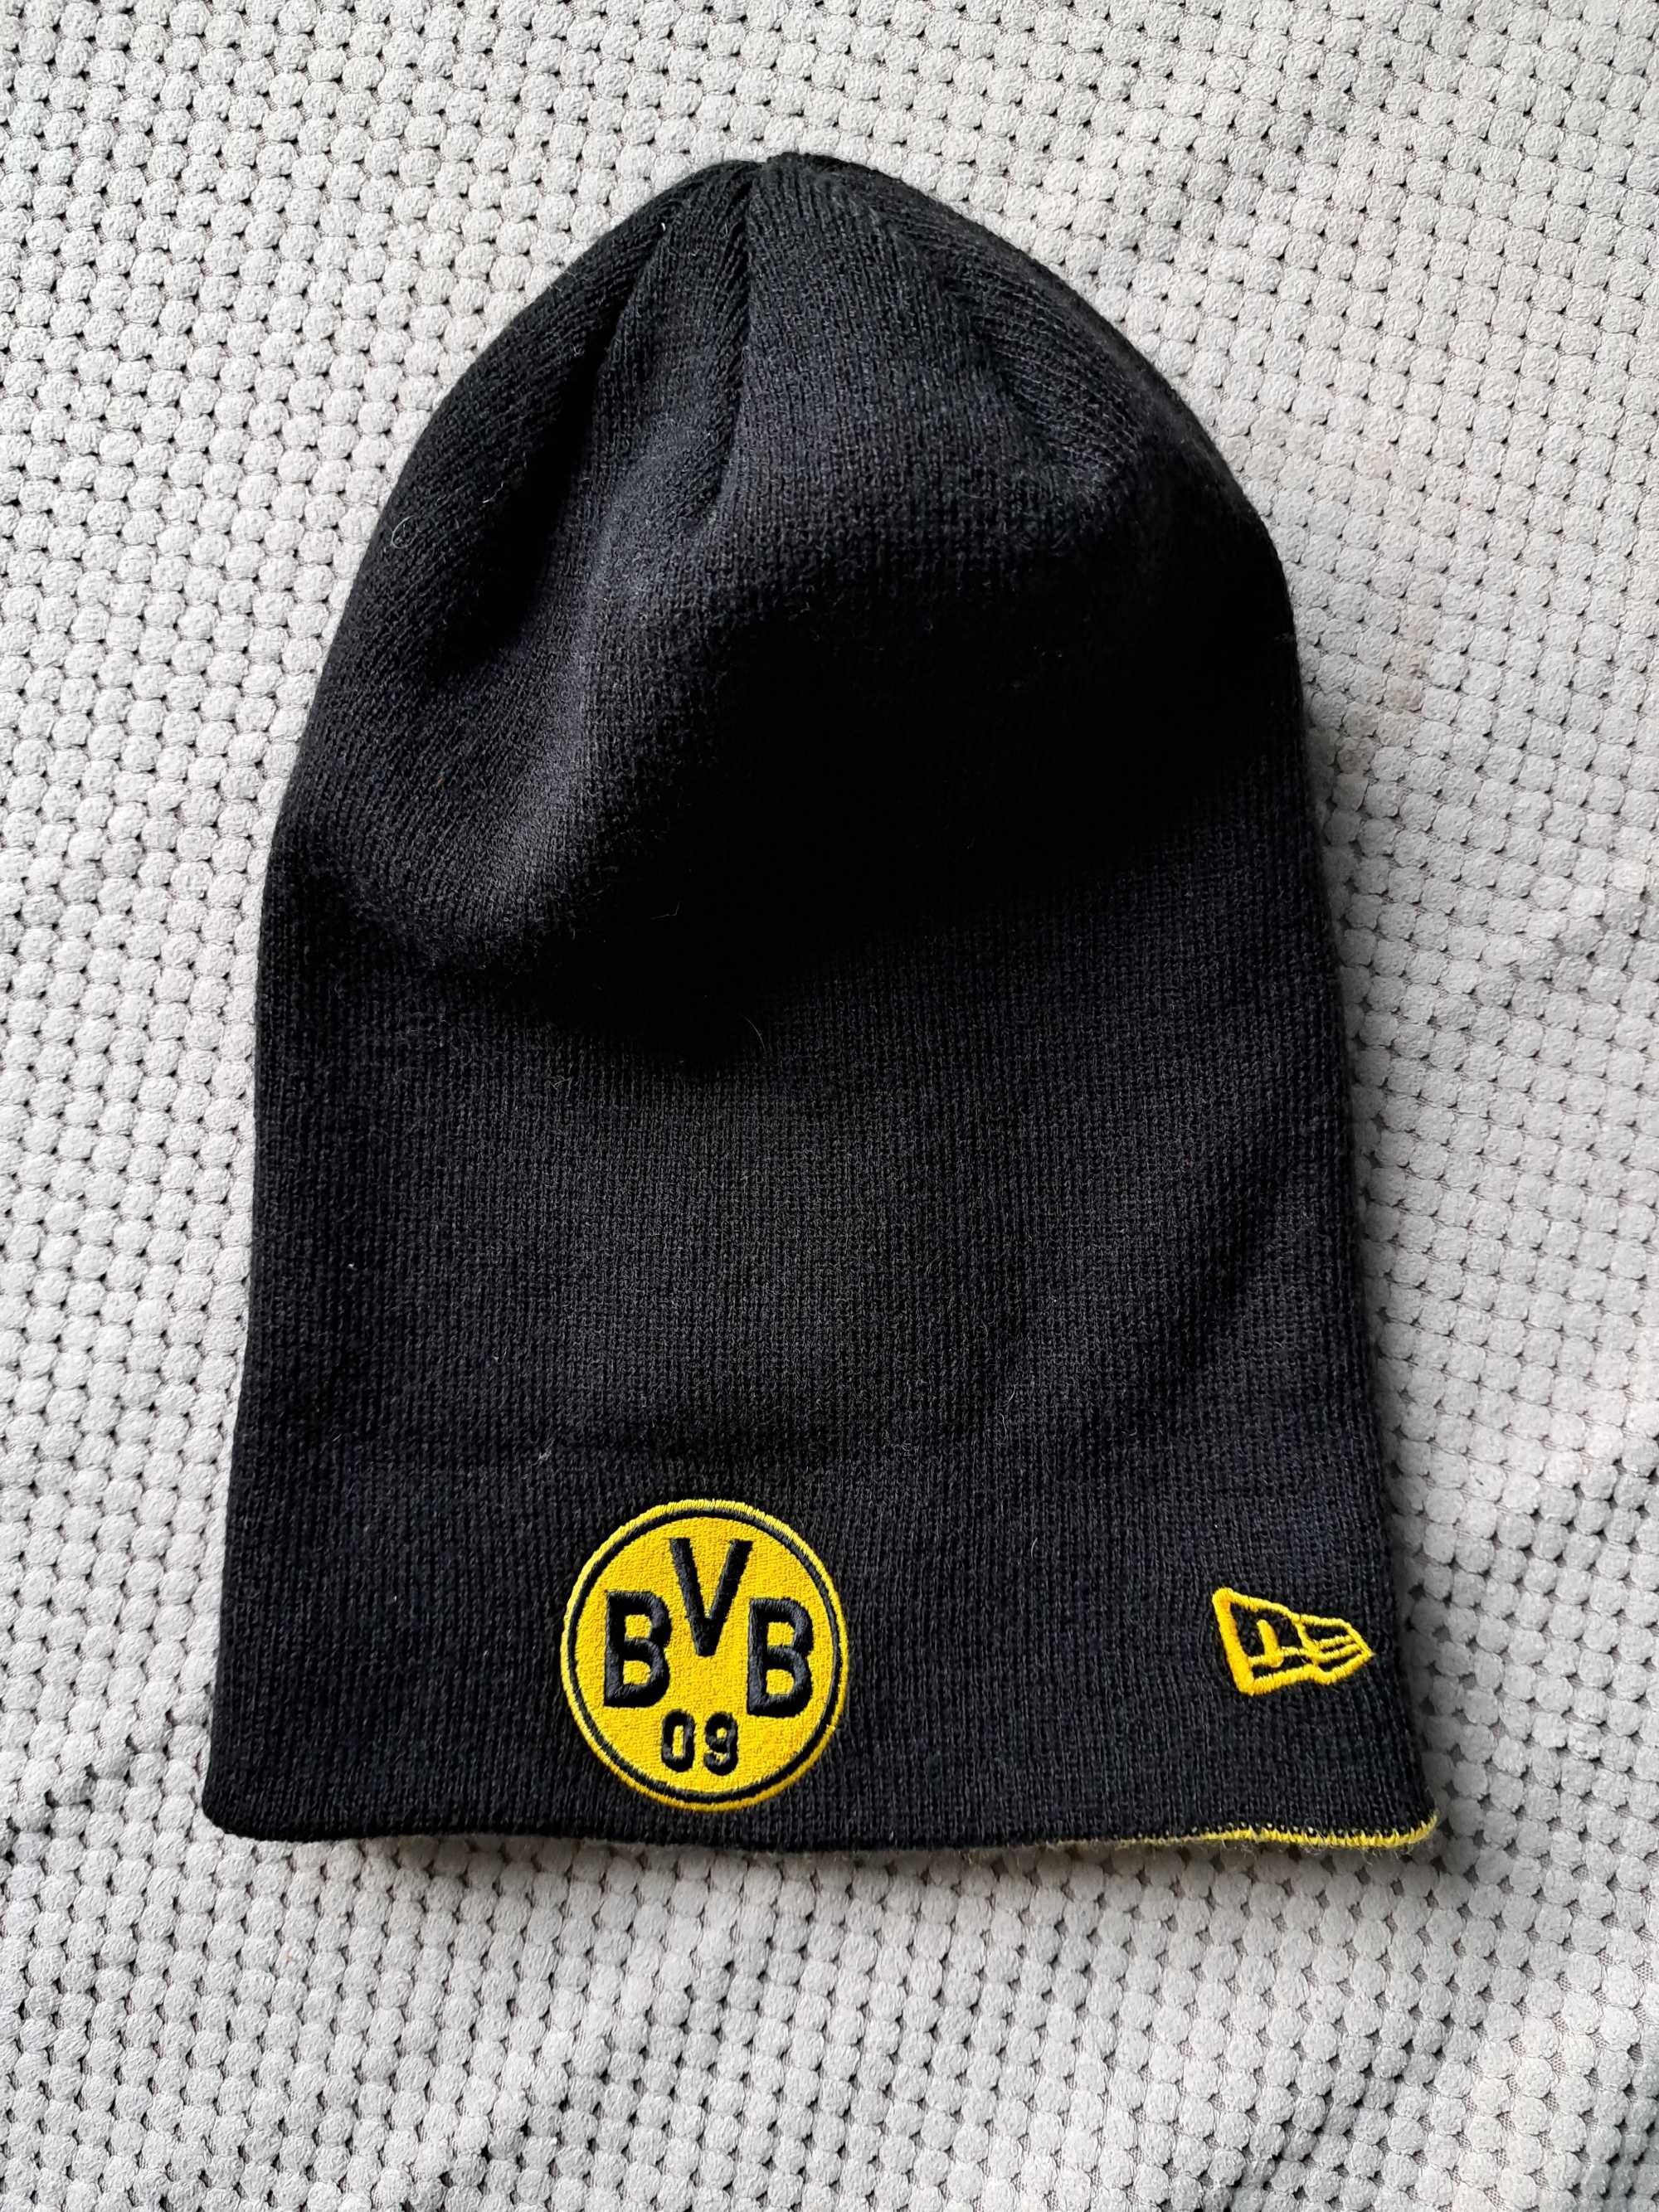 Czapka zimowa beanie New Era BVB Borussia Dortmund rzadkość vintage